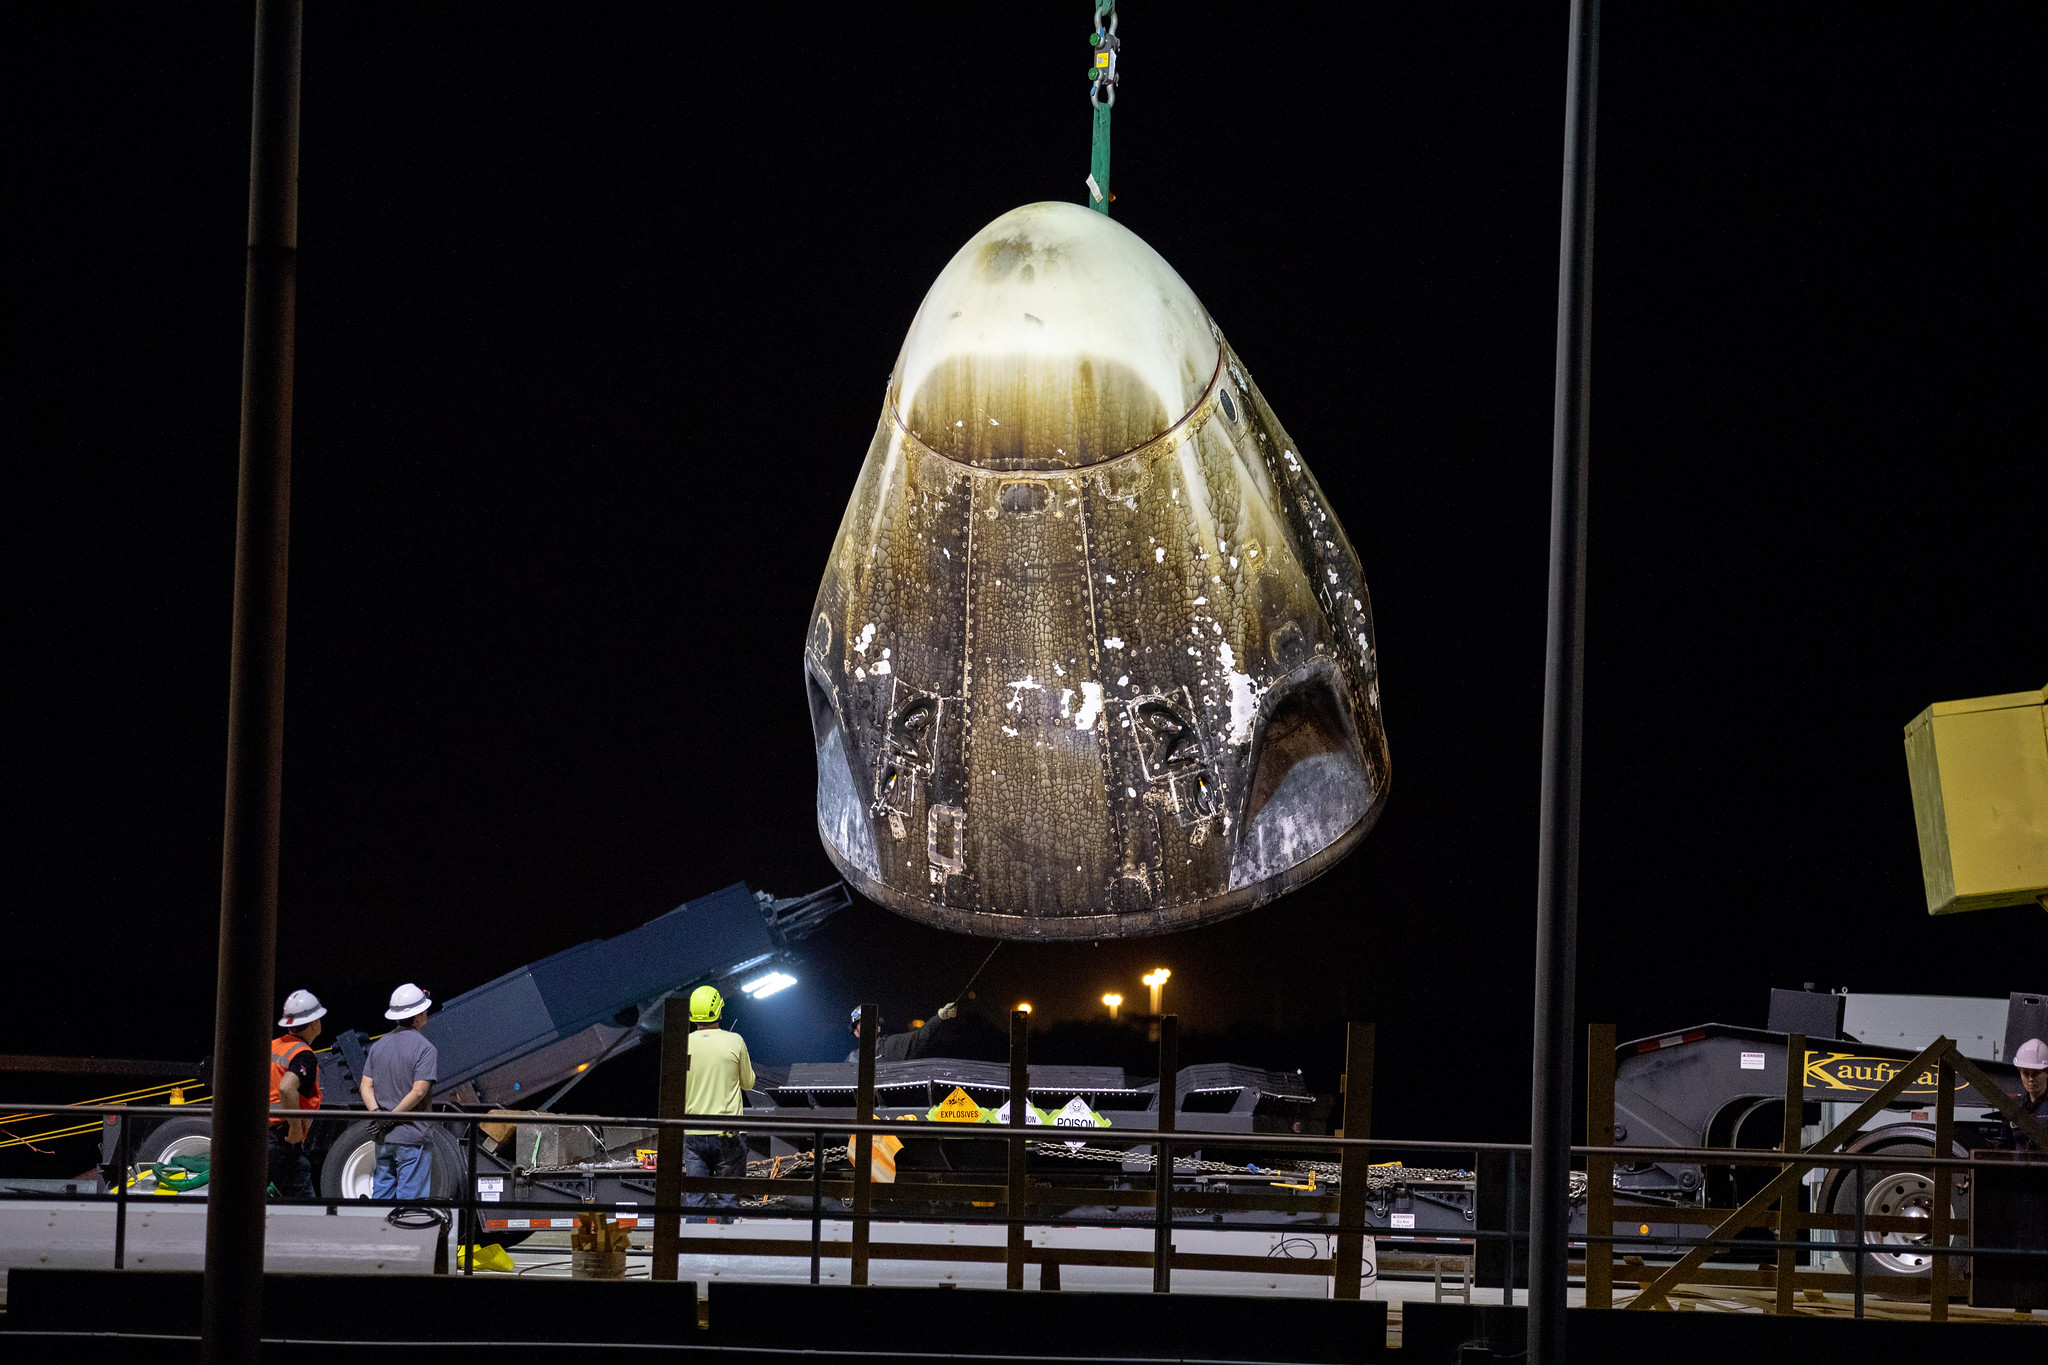 Récupération de la capsule Crew Dragon début mars 2019 après son amerrissage dans l'océan Atlantique au terme de son vol de démonstration aller-retour inhabité vers la Station spatiale internationale (ISS). Cette même capsule a explosé lors d'un test statique de ses moteurs-fusée SuperDraco le 20 avril 2019. © SpaceX, Isaac Watson/Nasa